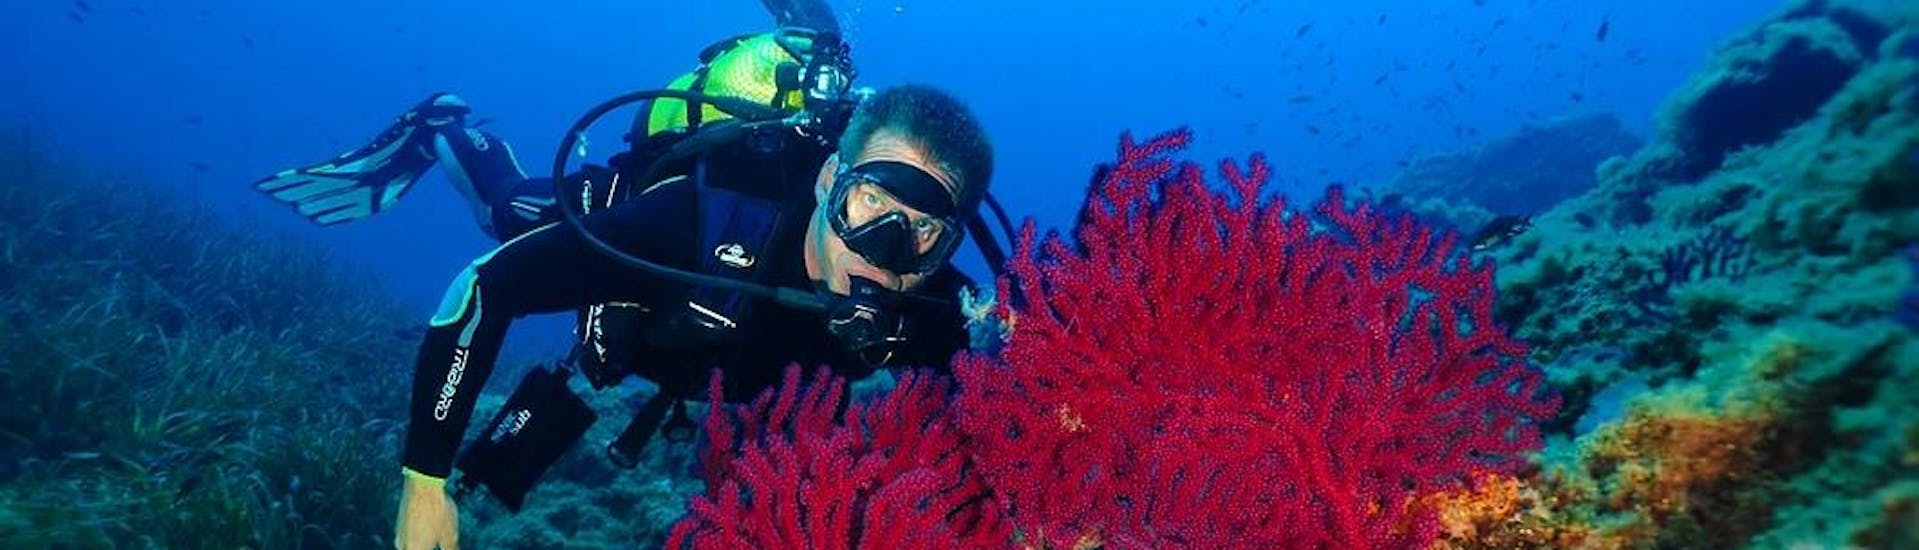 Un moniteur montre les beautés sous-marines à un touriste pour sa plongée d'essai au Lion de Mer avec Aventure Sous-Marine Saint-Raphaël.